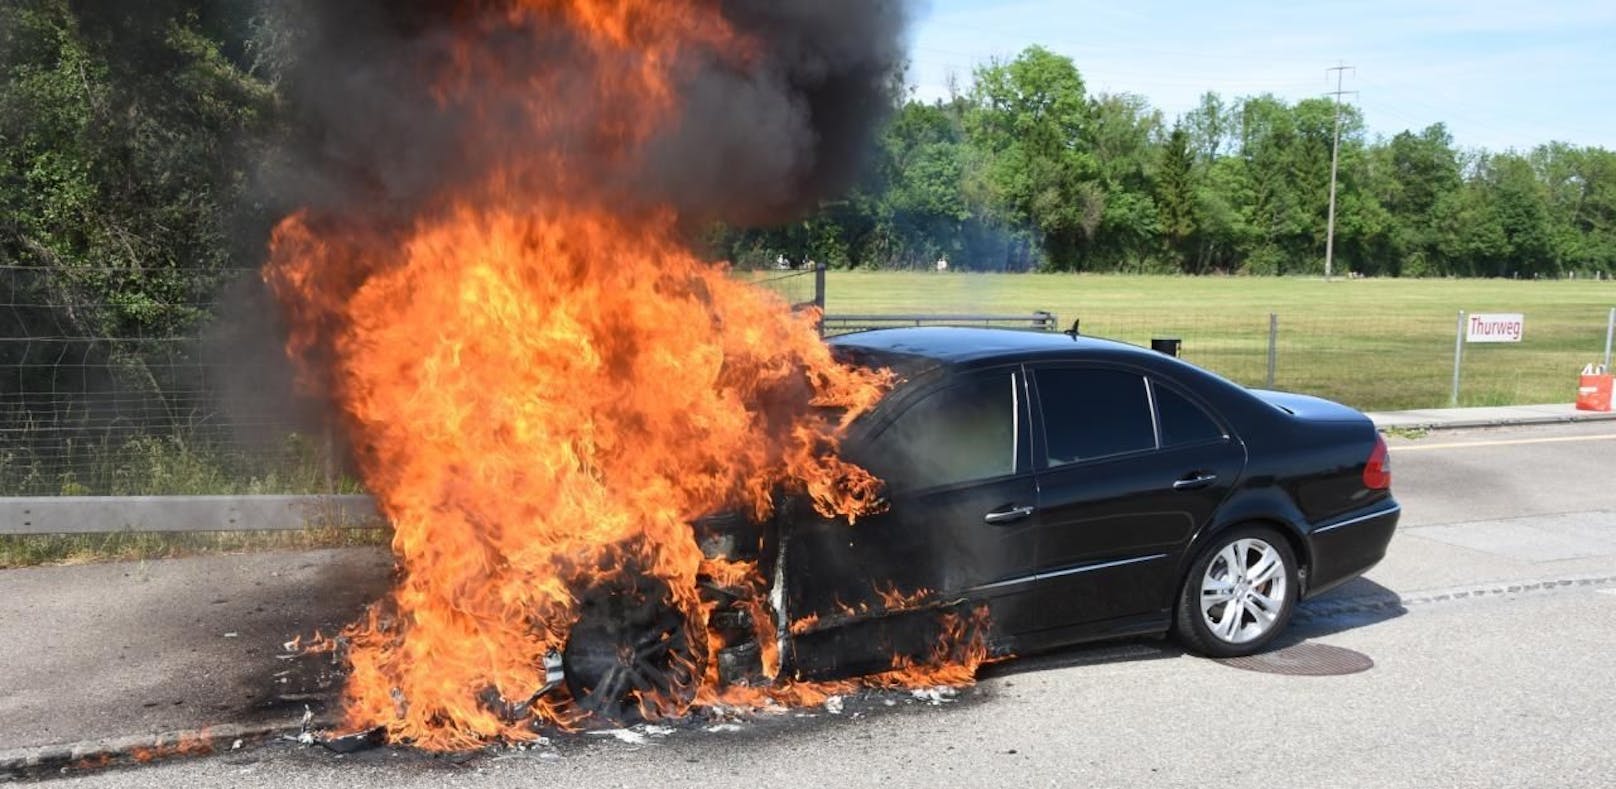 Benzin statt Diesel  laut Polizei soll eine Falschbetankung schuld an dem Fahrzeugbrand sein.